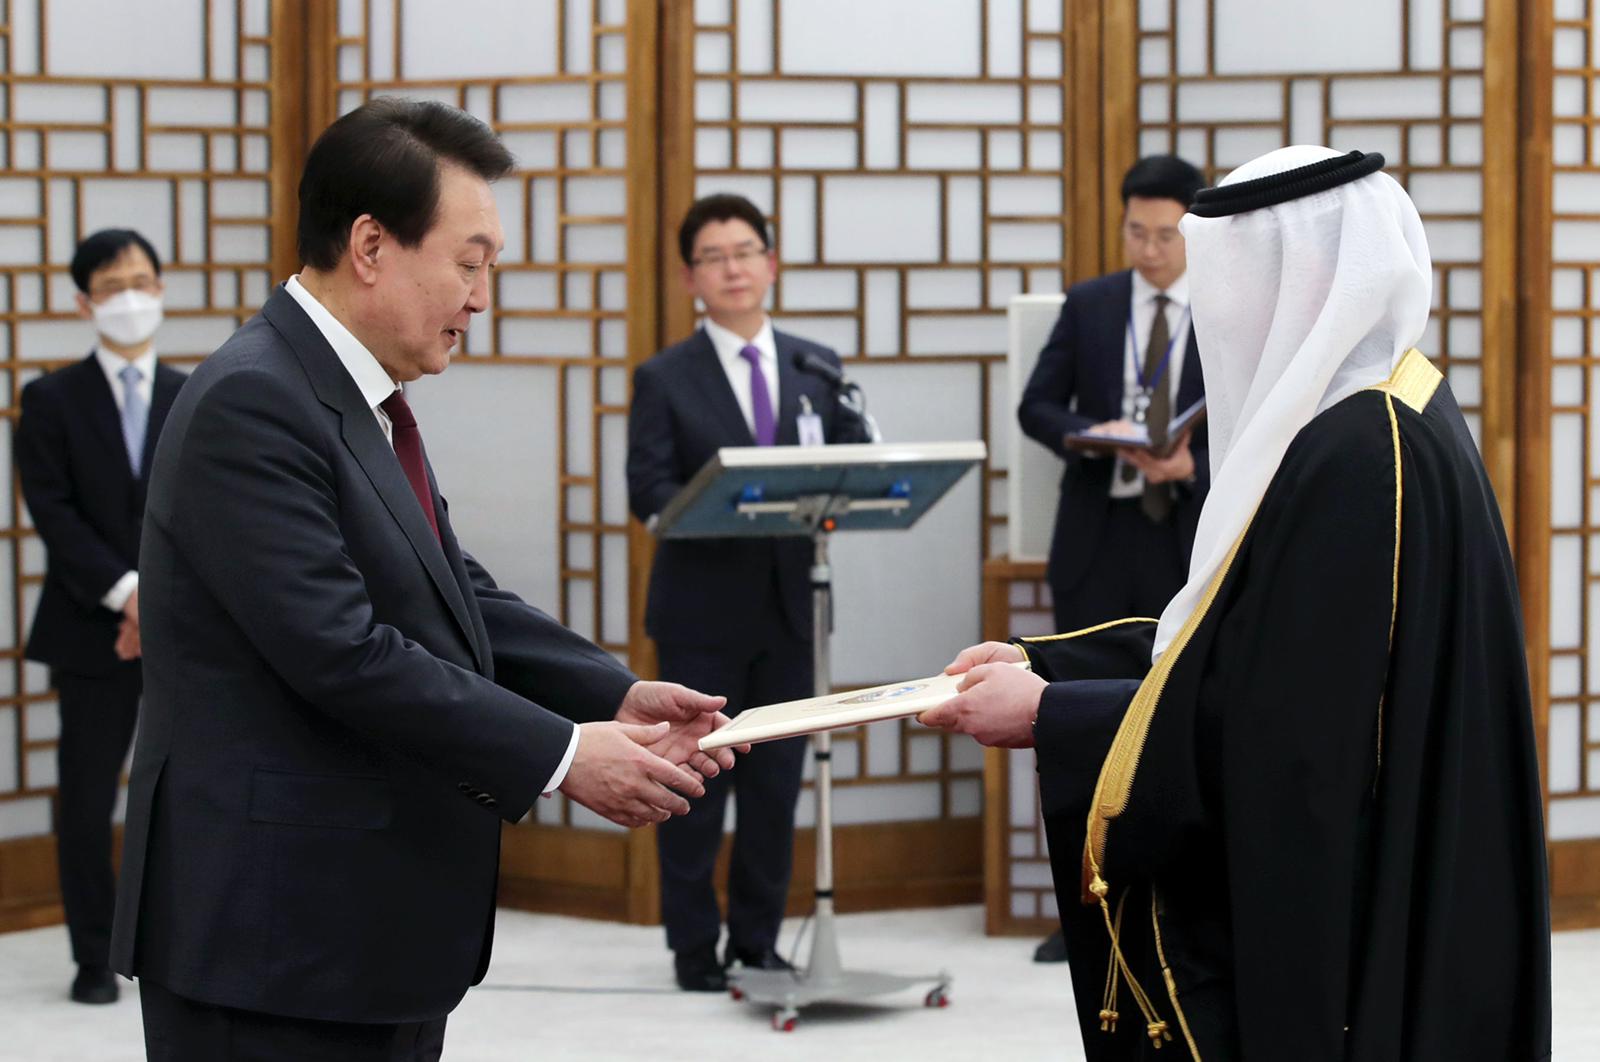 سفير دولة الكويت لدى جمهورية كوريا ذياب الرشيدي يقدم أوراق اعتماده الى رئيس جمهورية كوريا يون سوك يول